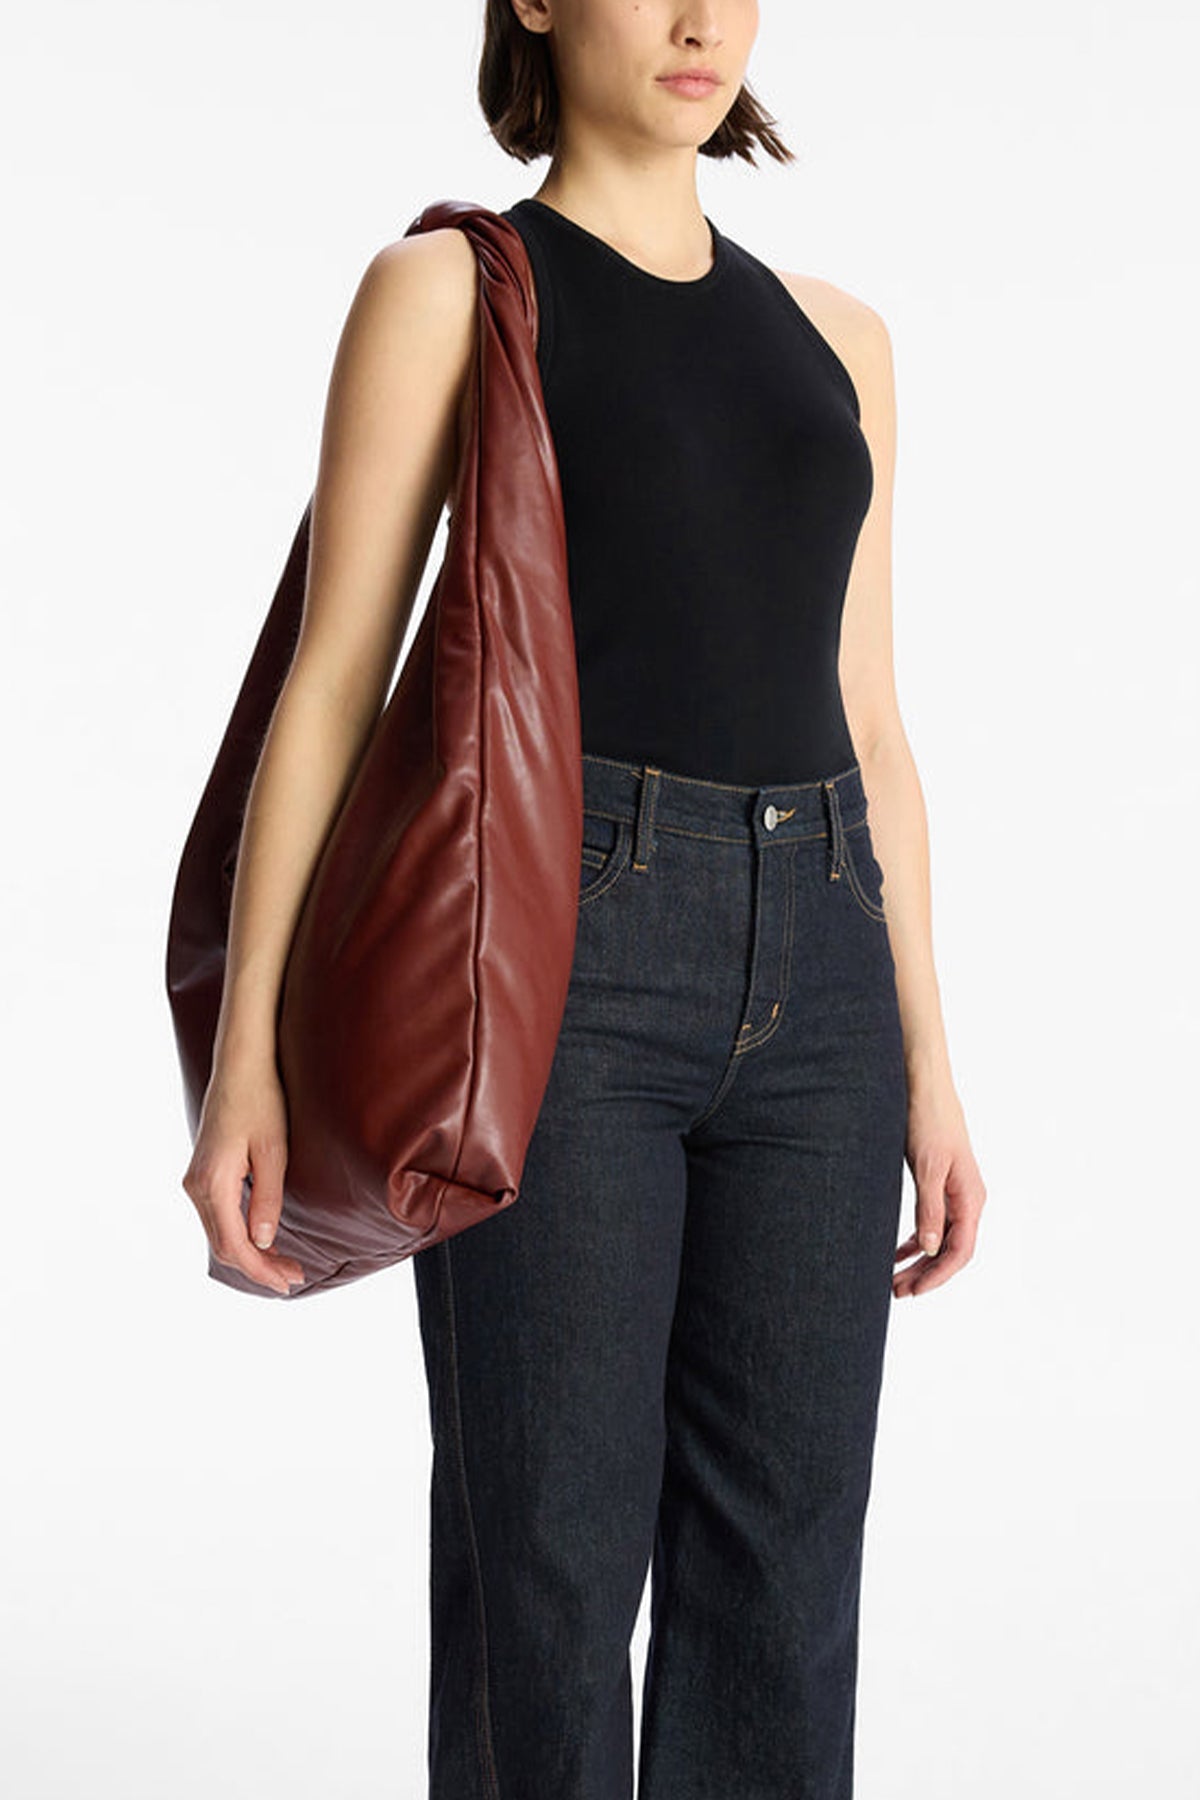 Shiloh Vegan Leather Shoulder Bag in Burnt Umber - shop-olivia.com